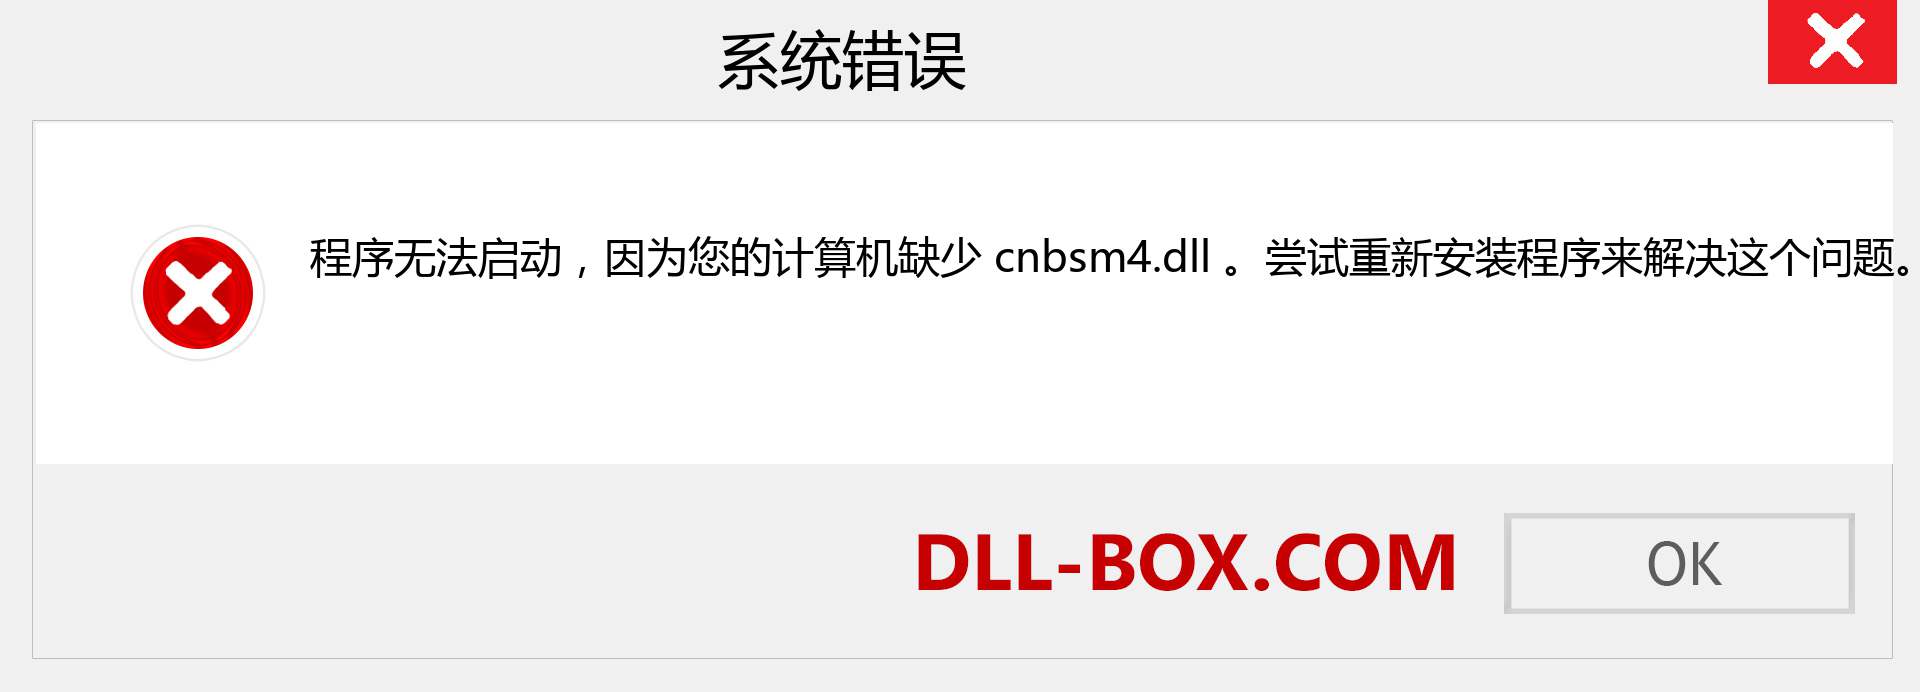 cnbsm4.dll 文件丢失？。 适用于 Windows 7、8、10 的下载 - 修复 Windows、照片、图像上的 cnbsm4 dll 丢失错误